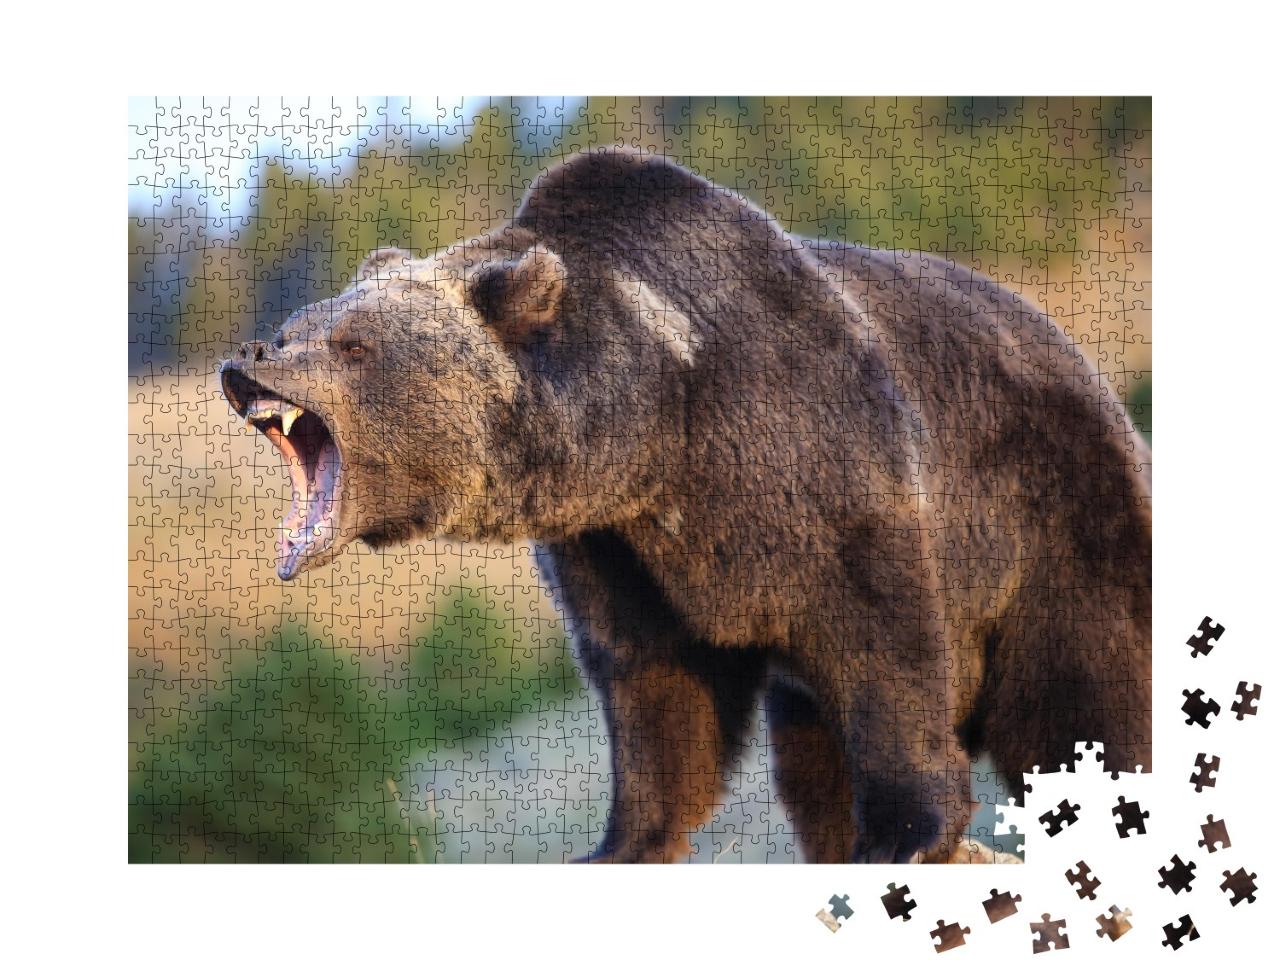 Puzzle 1000 Teile „Nordamerikanischer Braunbär: Grizzly“